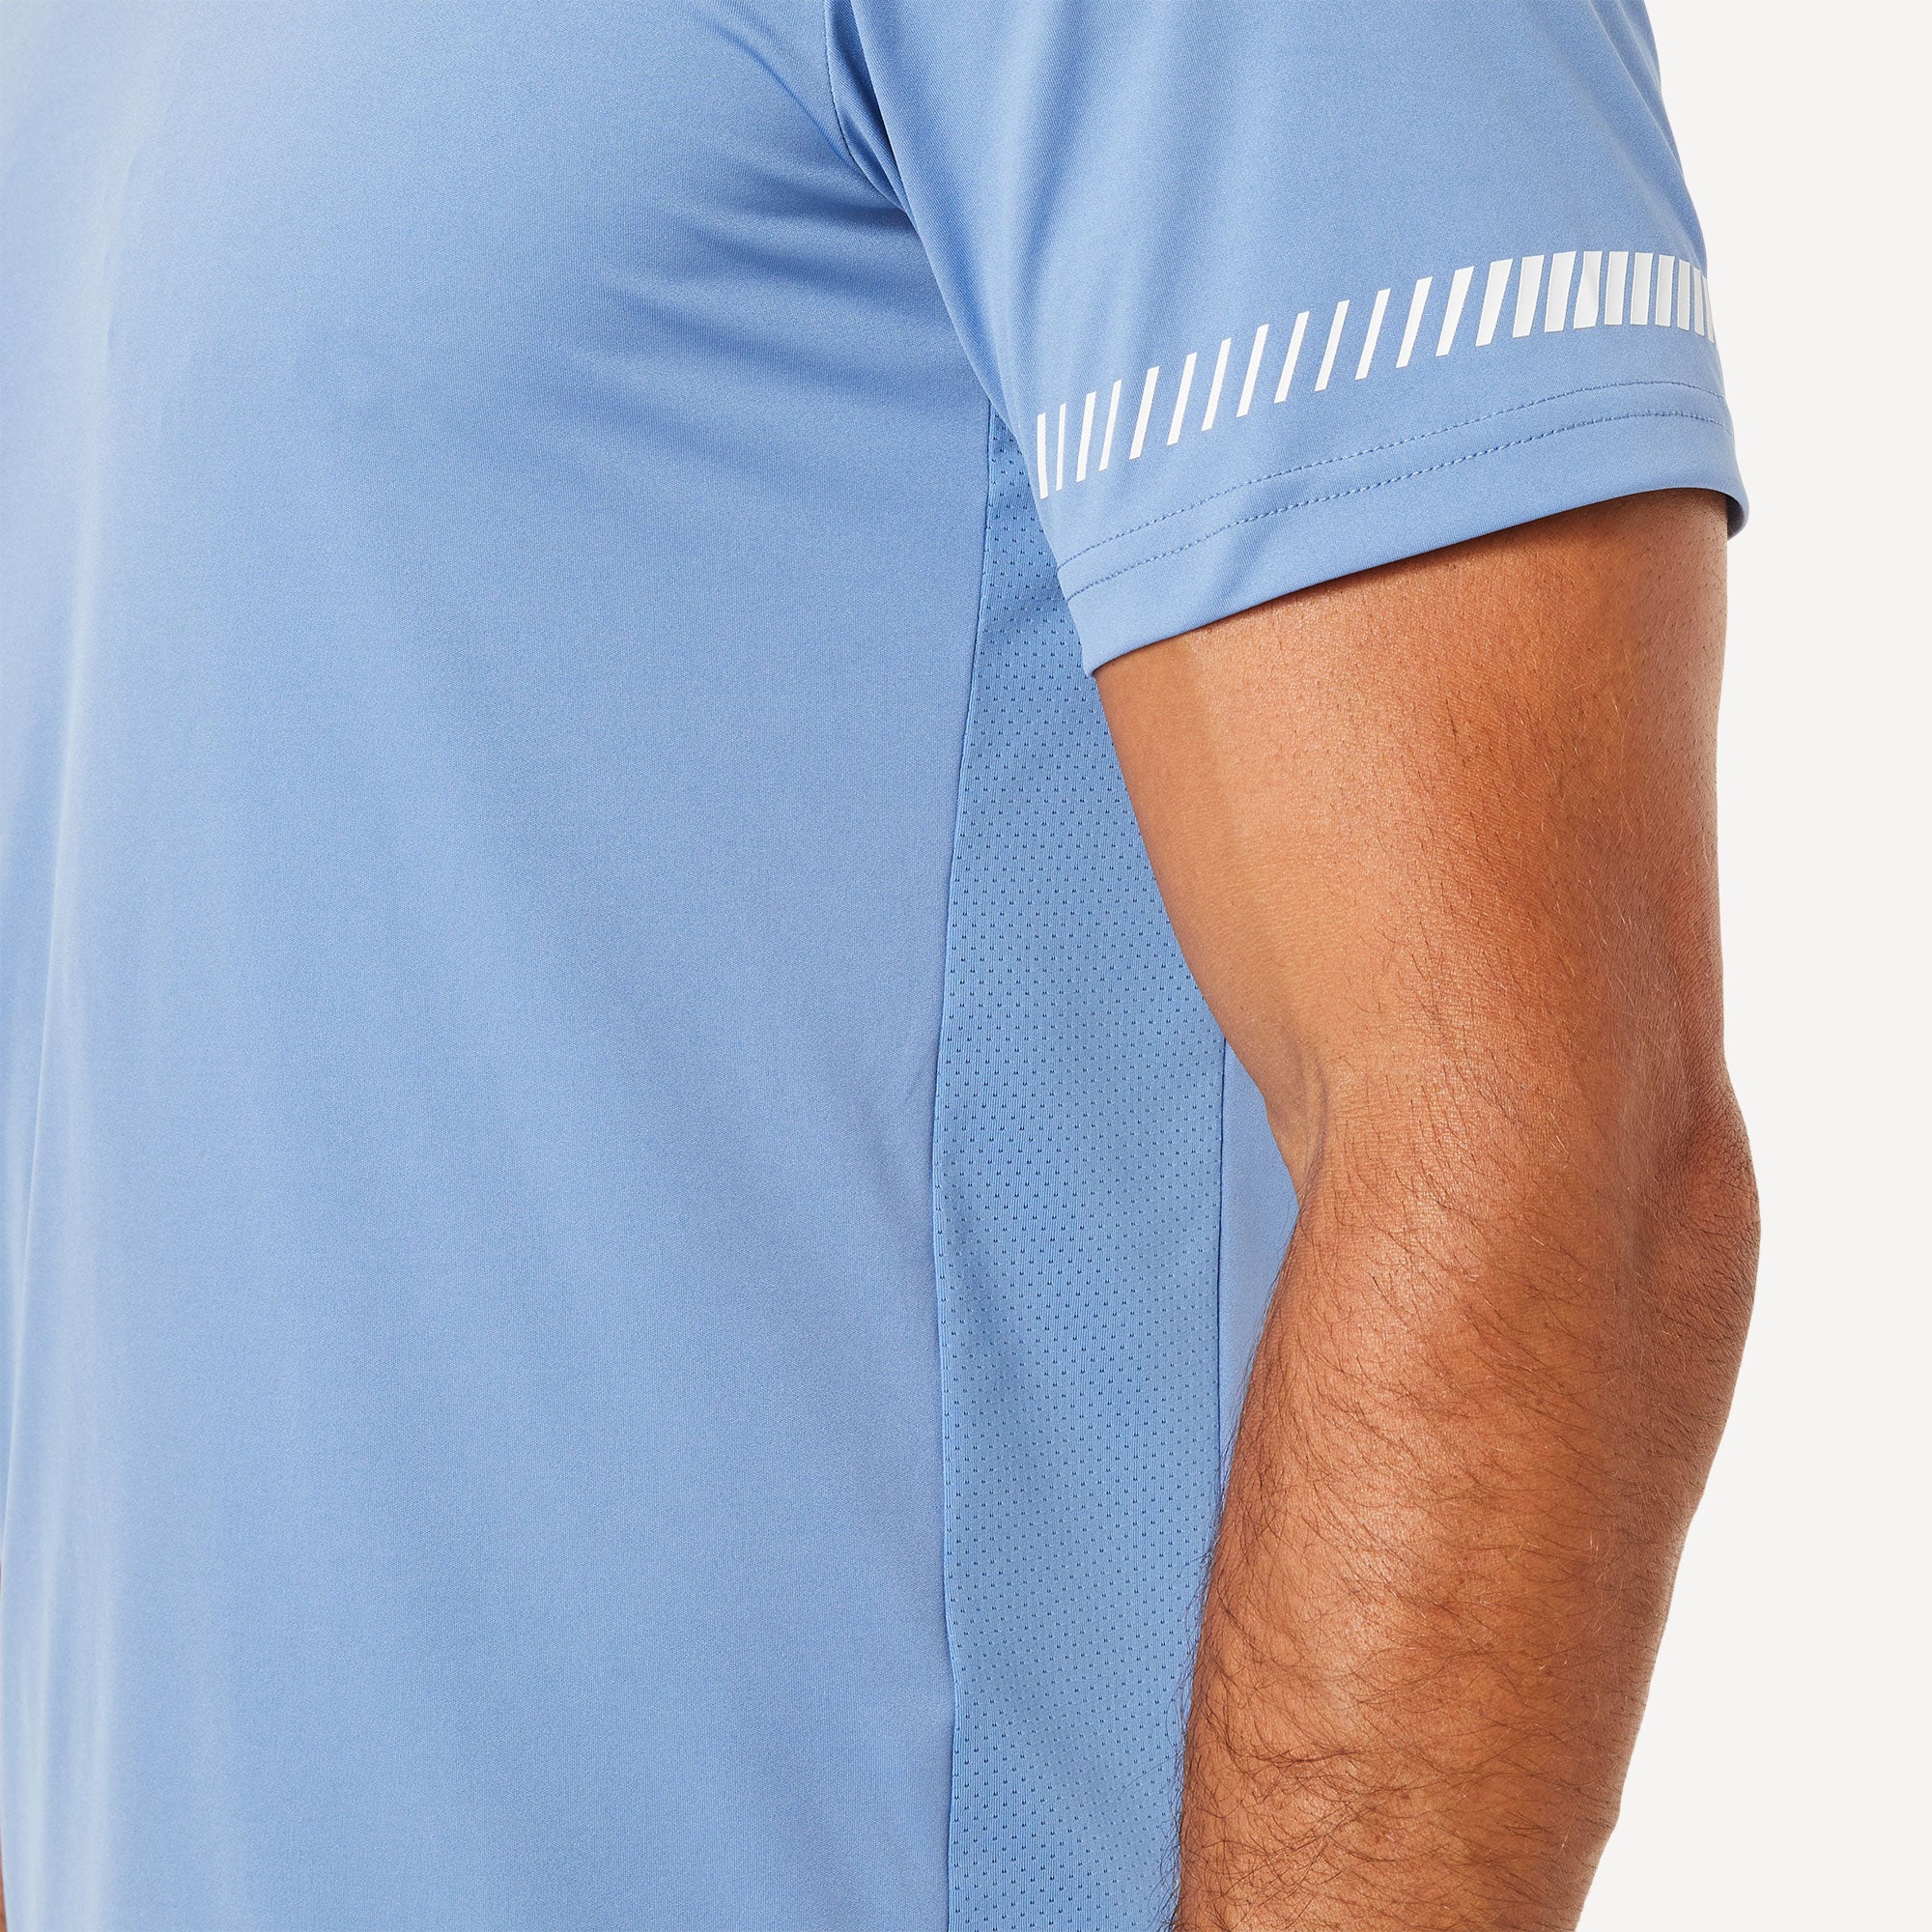 ASICS Court Men's Tennis Shirt Blue (5)